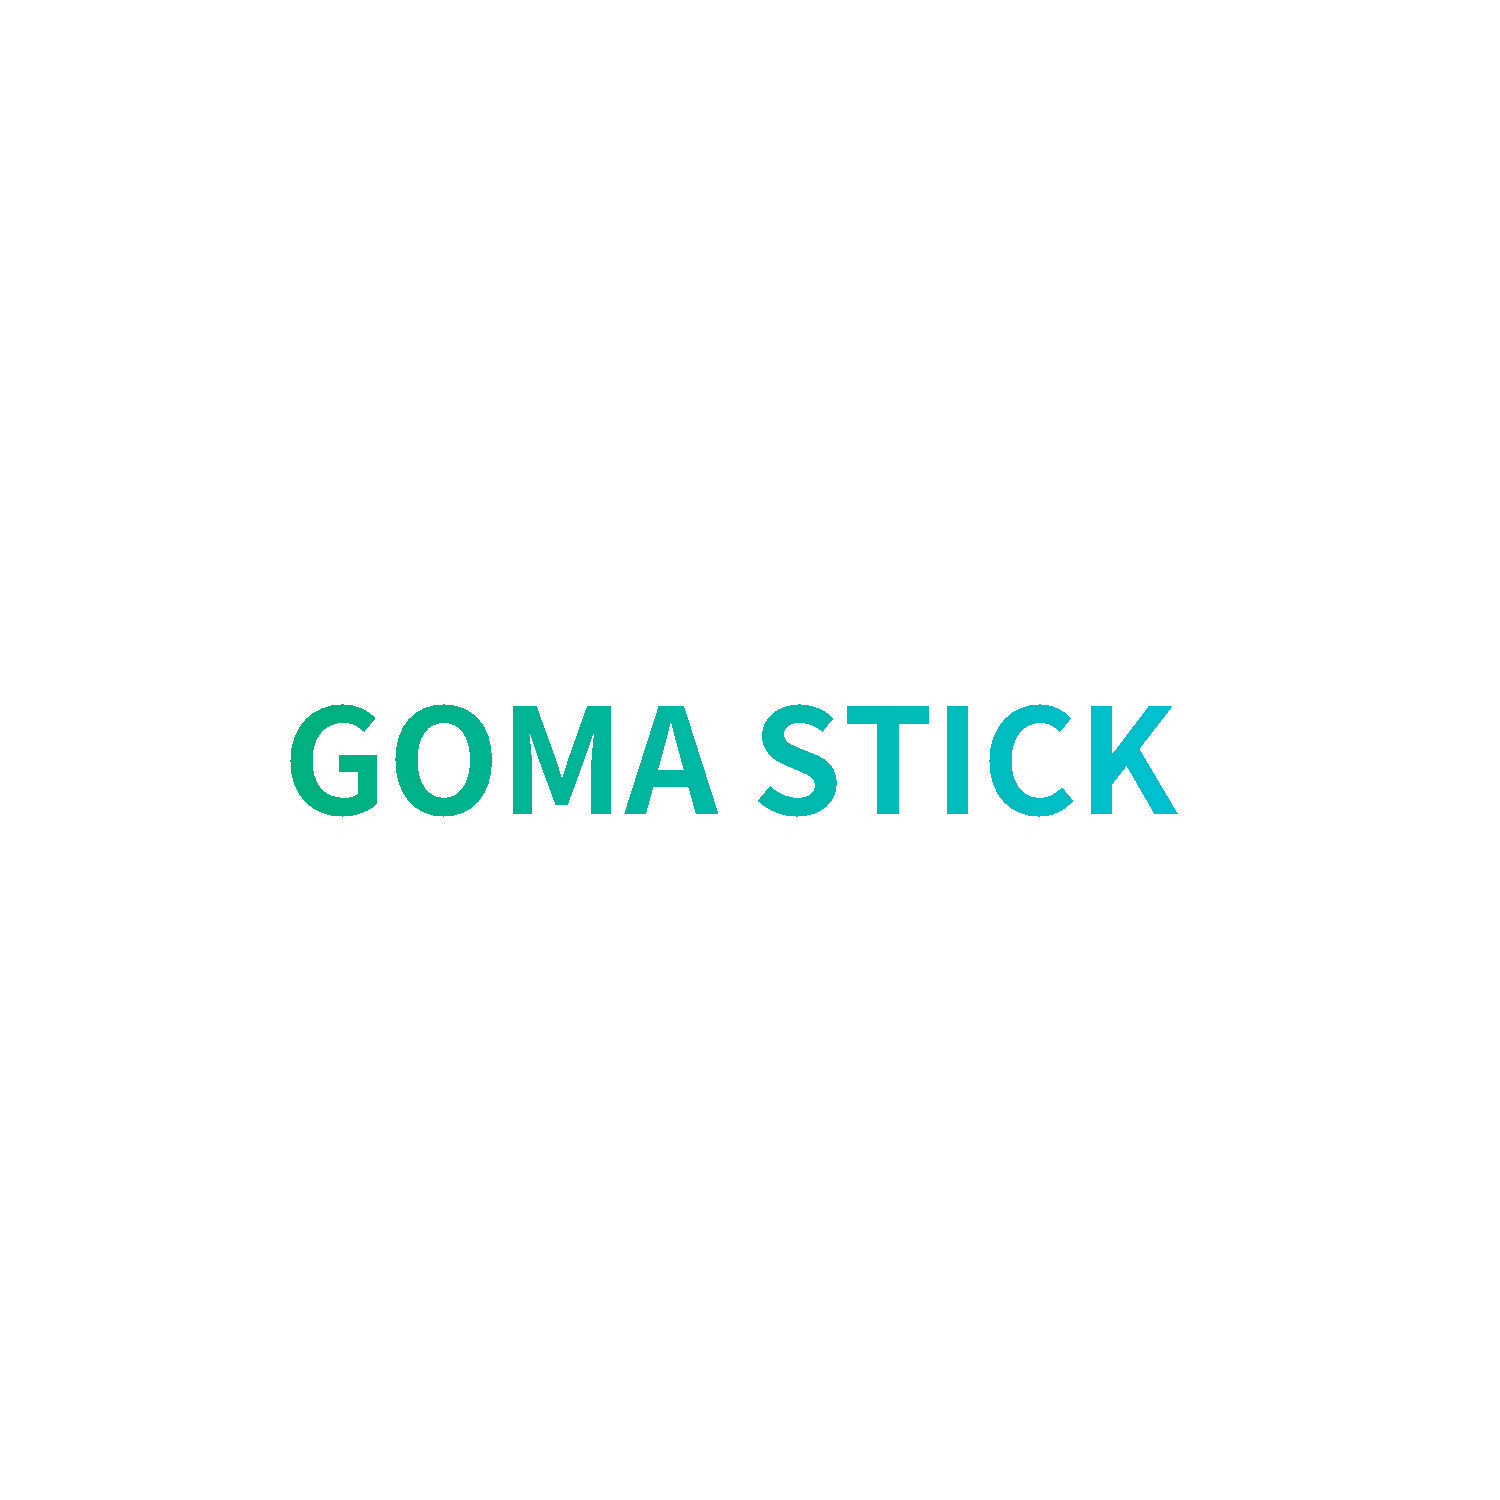 GOMA STICK